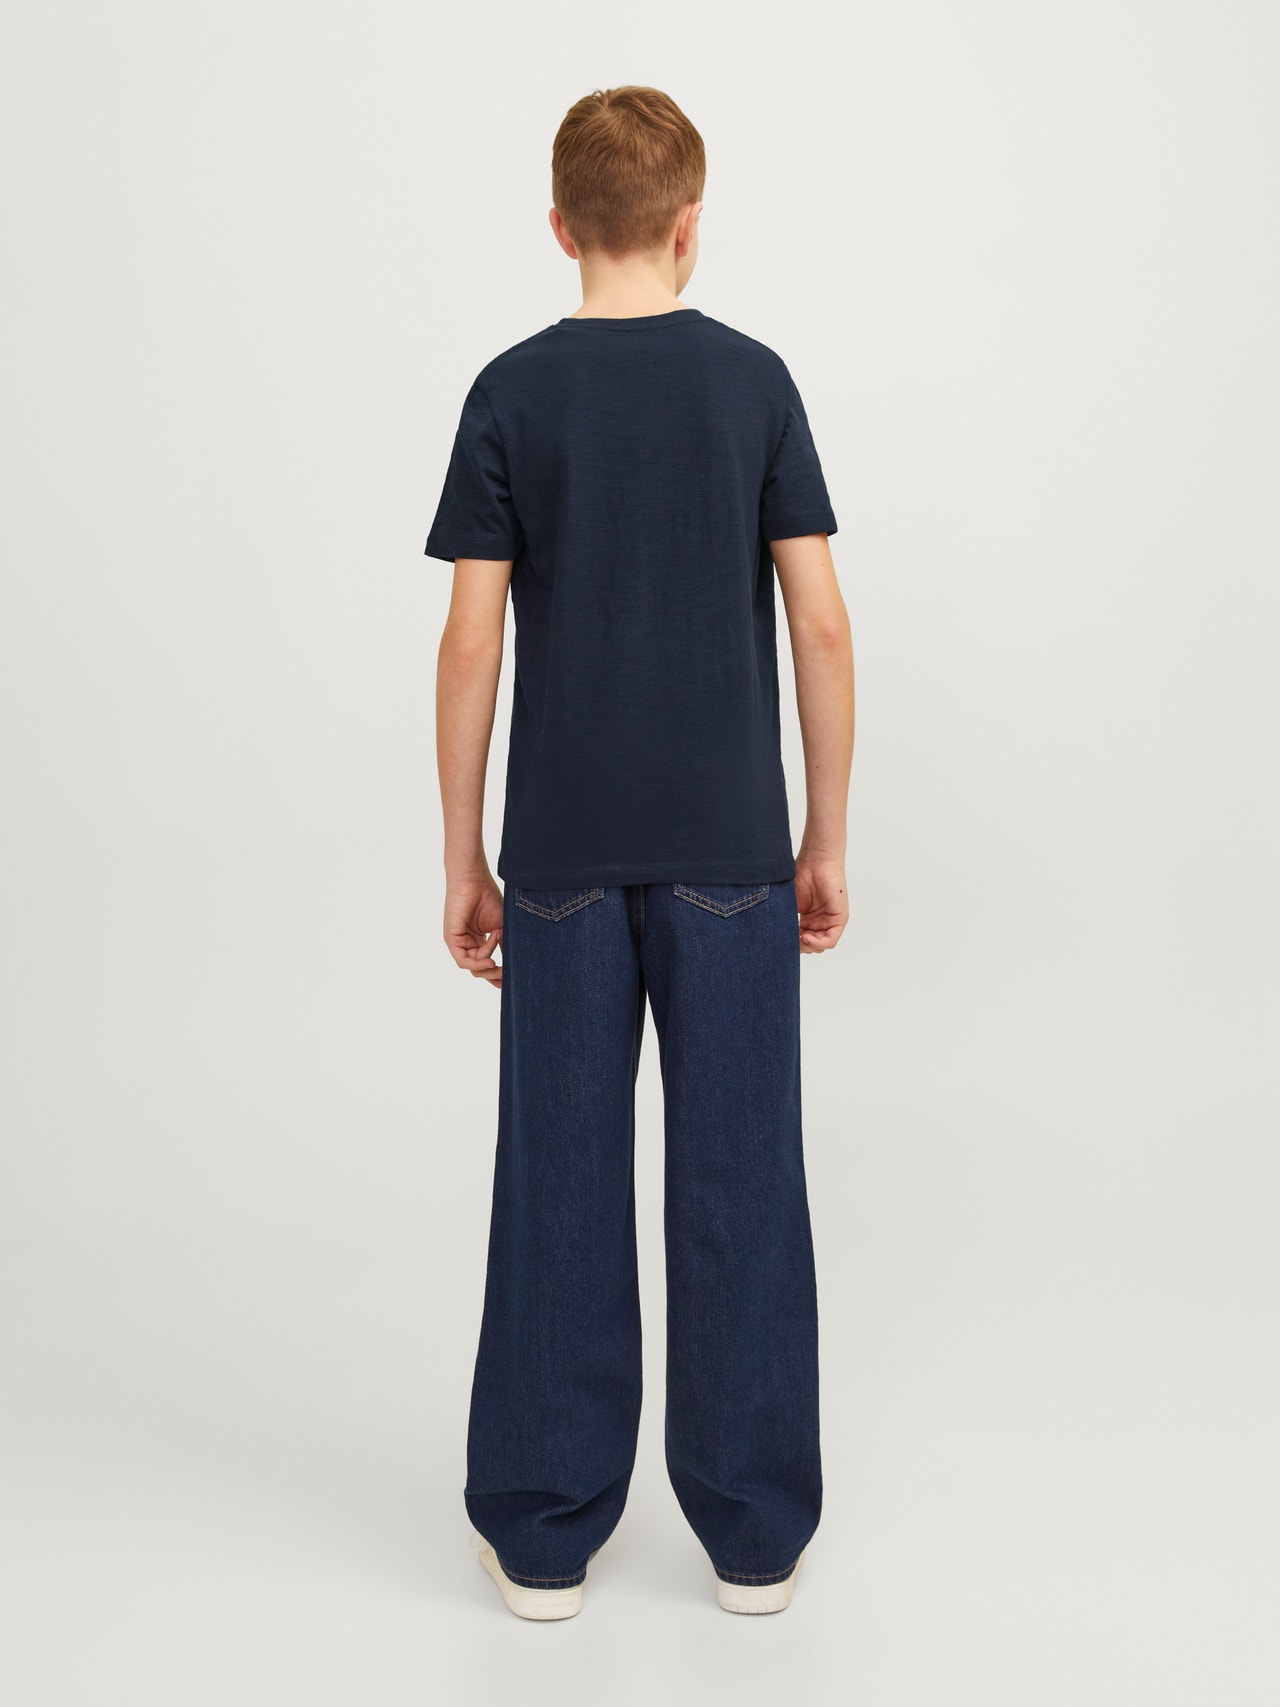 Jack & Jones T-shirt Estampar Para meninos -Navy Blazer - 12258234